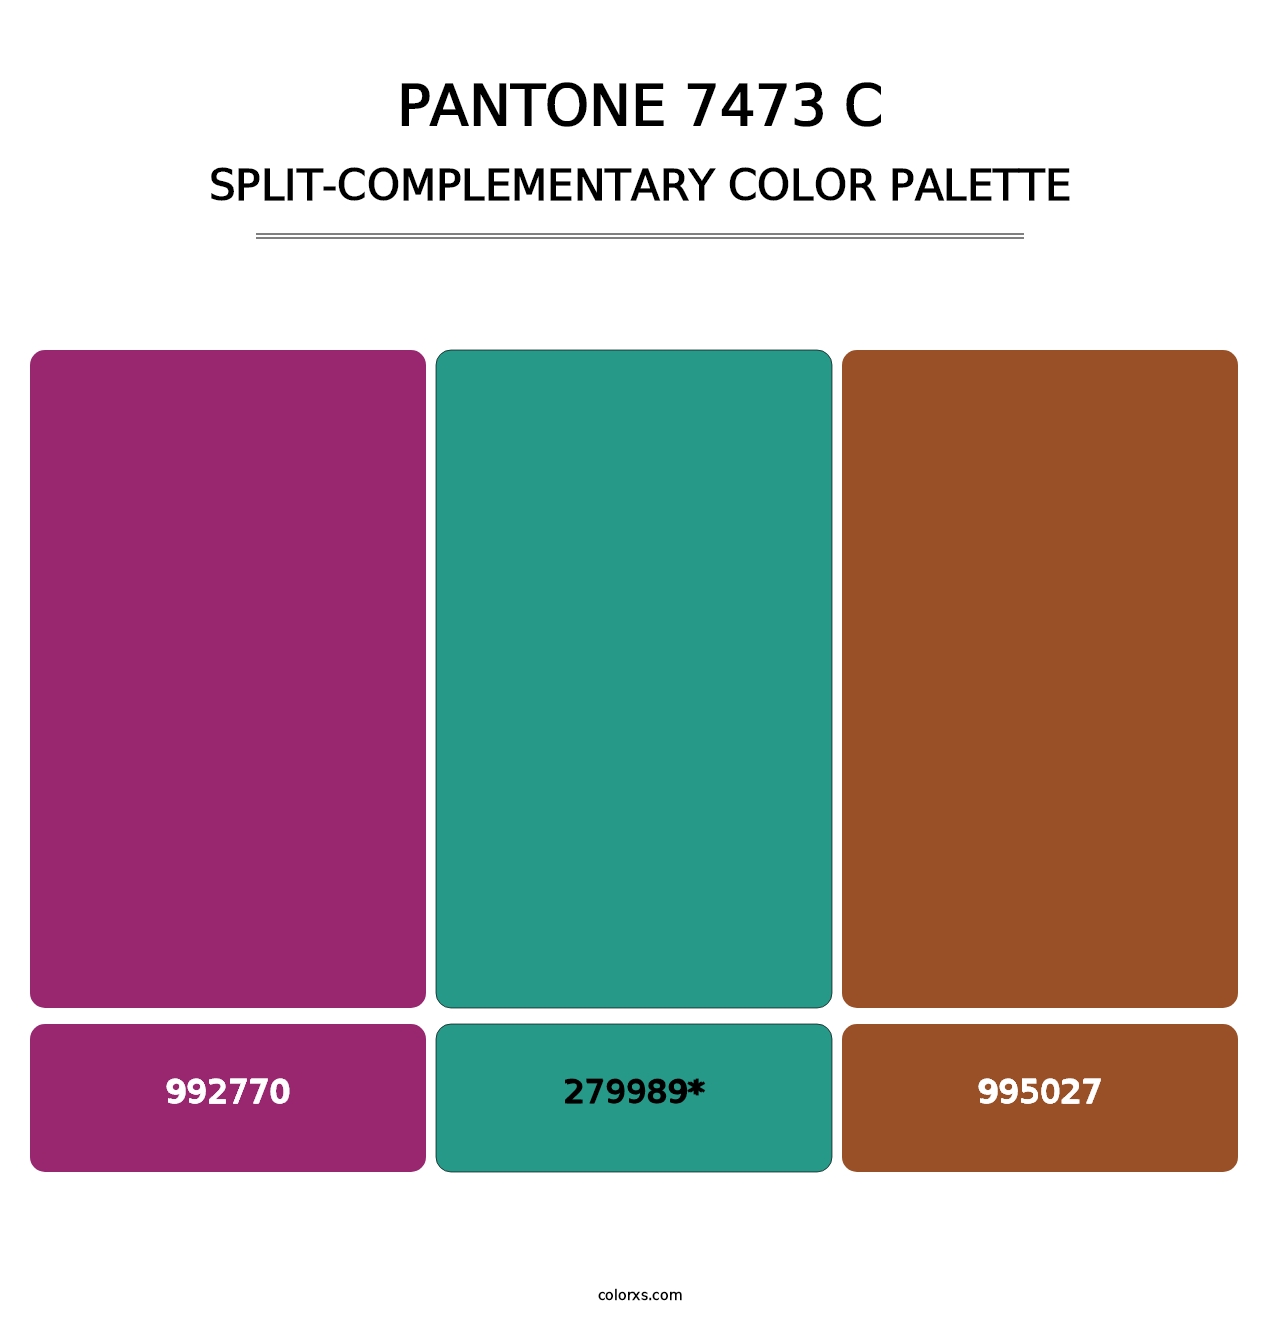 PANTONE 7473 C - Split-Complementary Color Palette